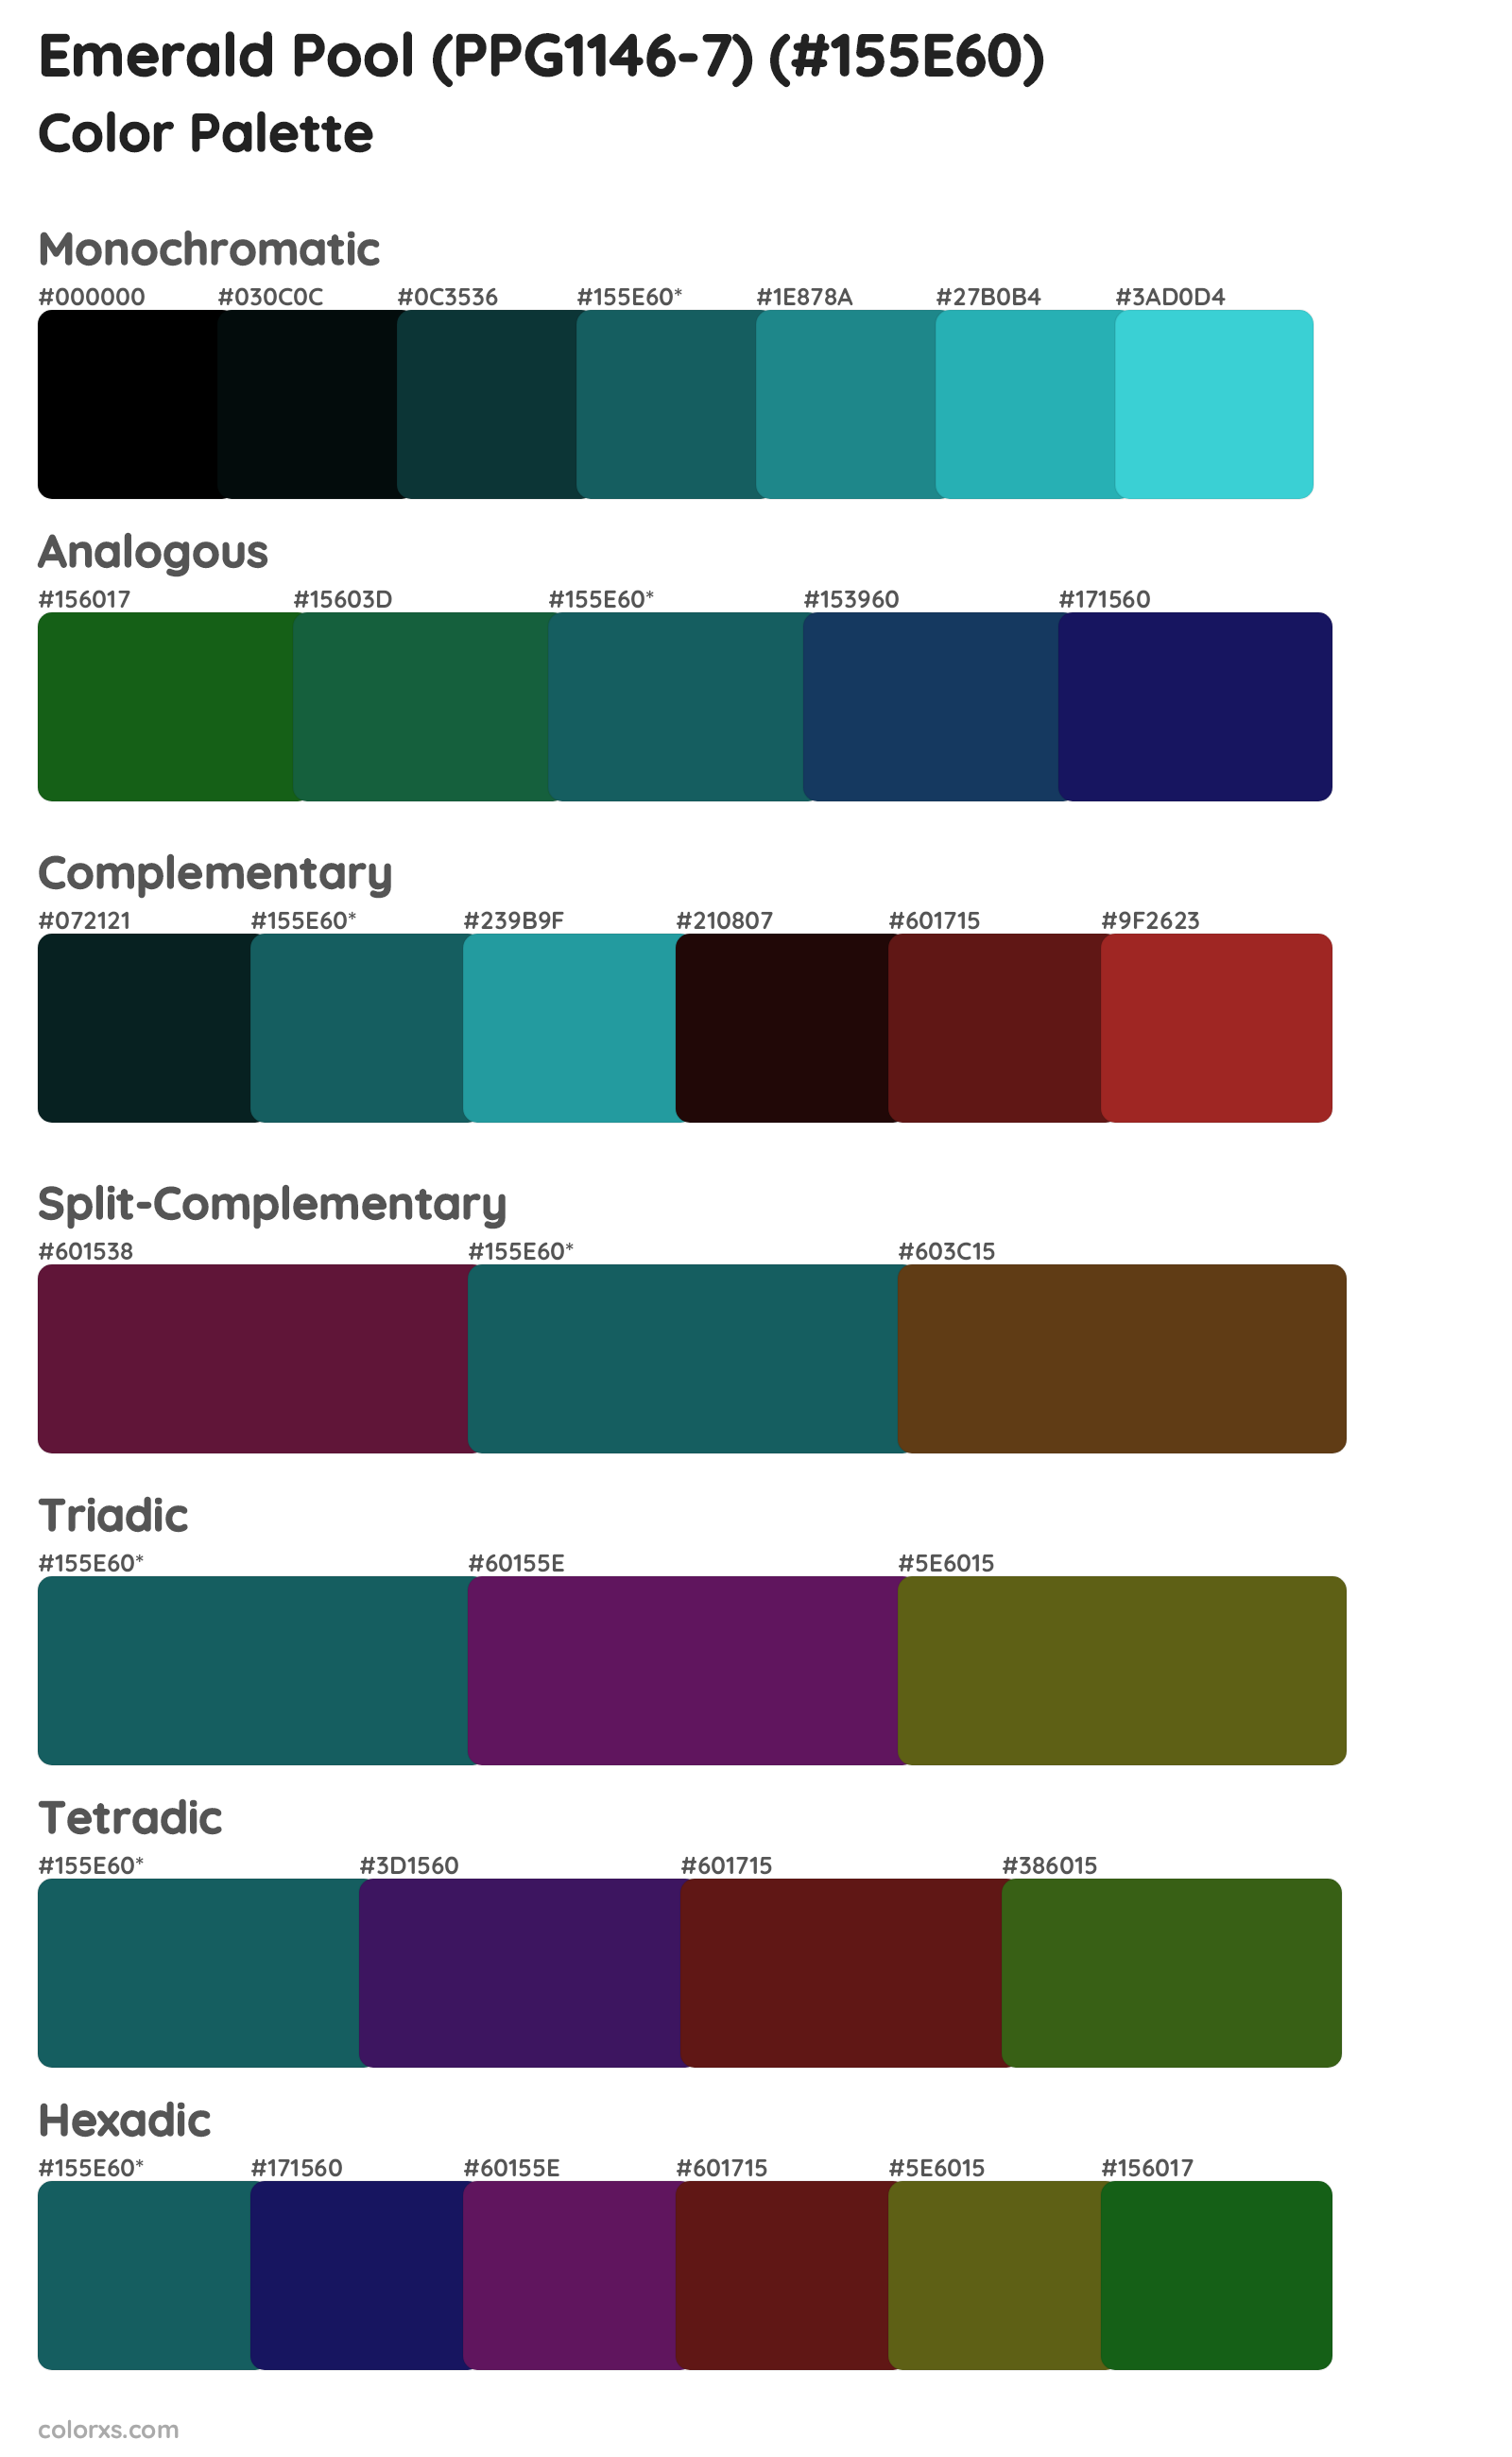 Emerald Pool (PPG1146-7) Color Scheme Palettes